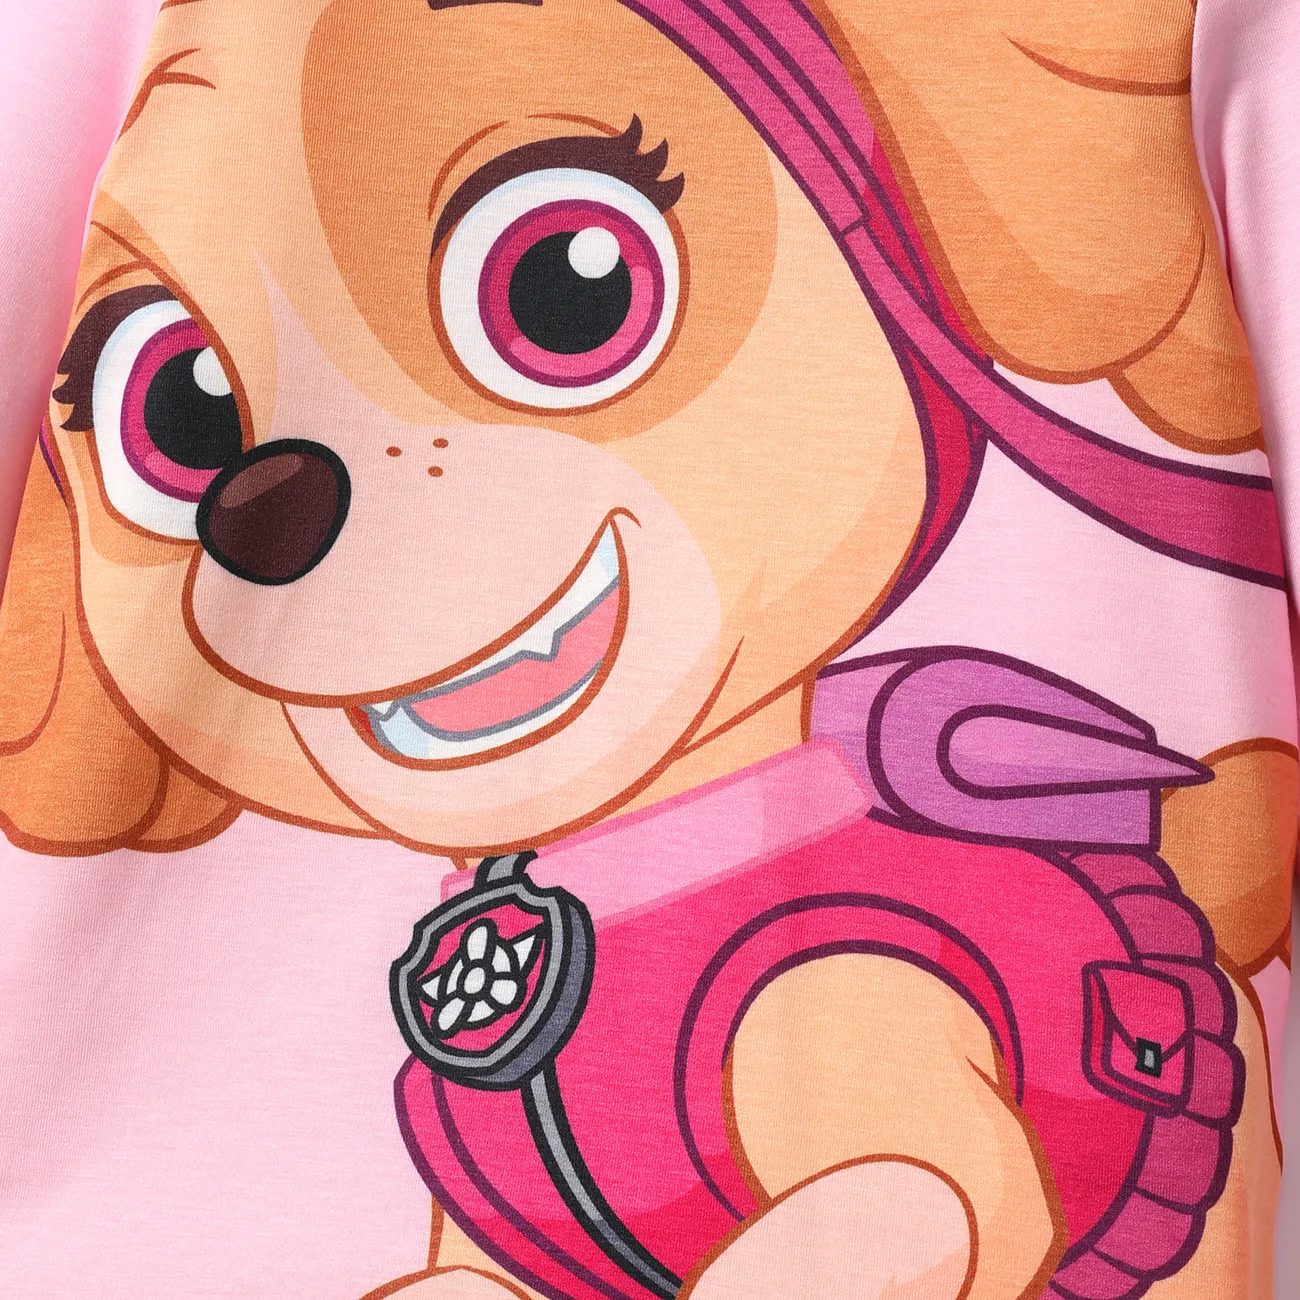 Helfer auf vier Pfoten 2 Stück Kleinkinder Unisex Kindlich Hund T-Shirt-Sets rosa big image 1